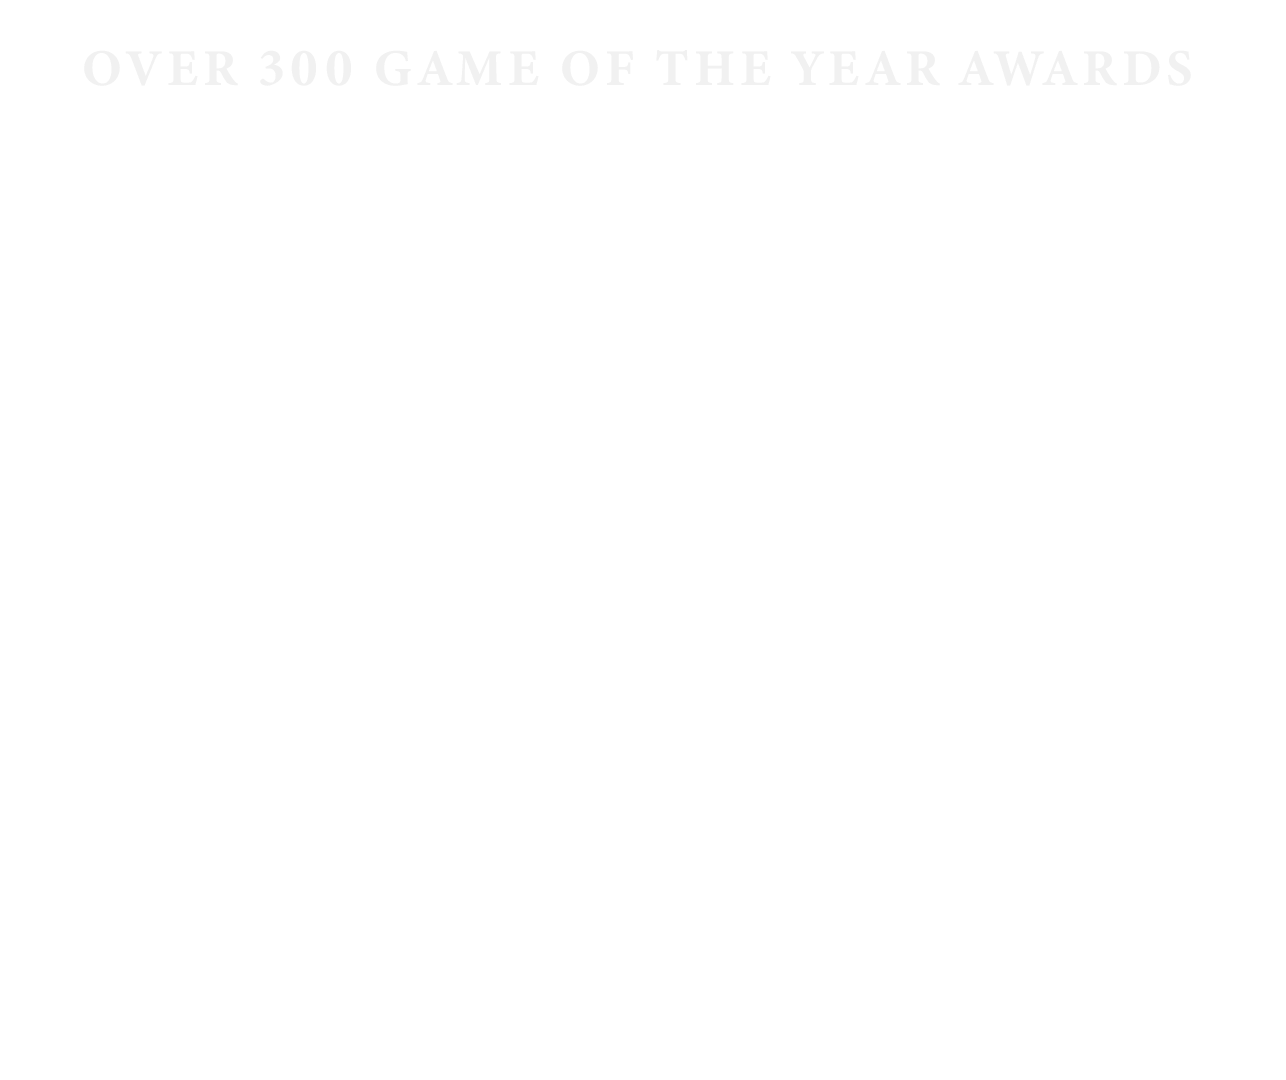 Ocenění The Last of Us Part 2